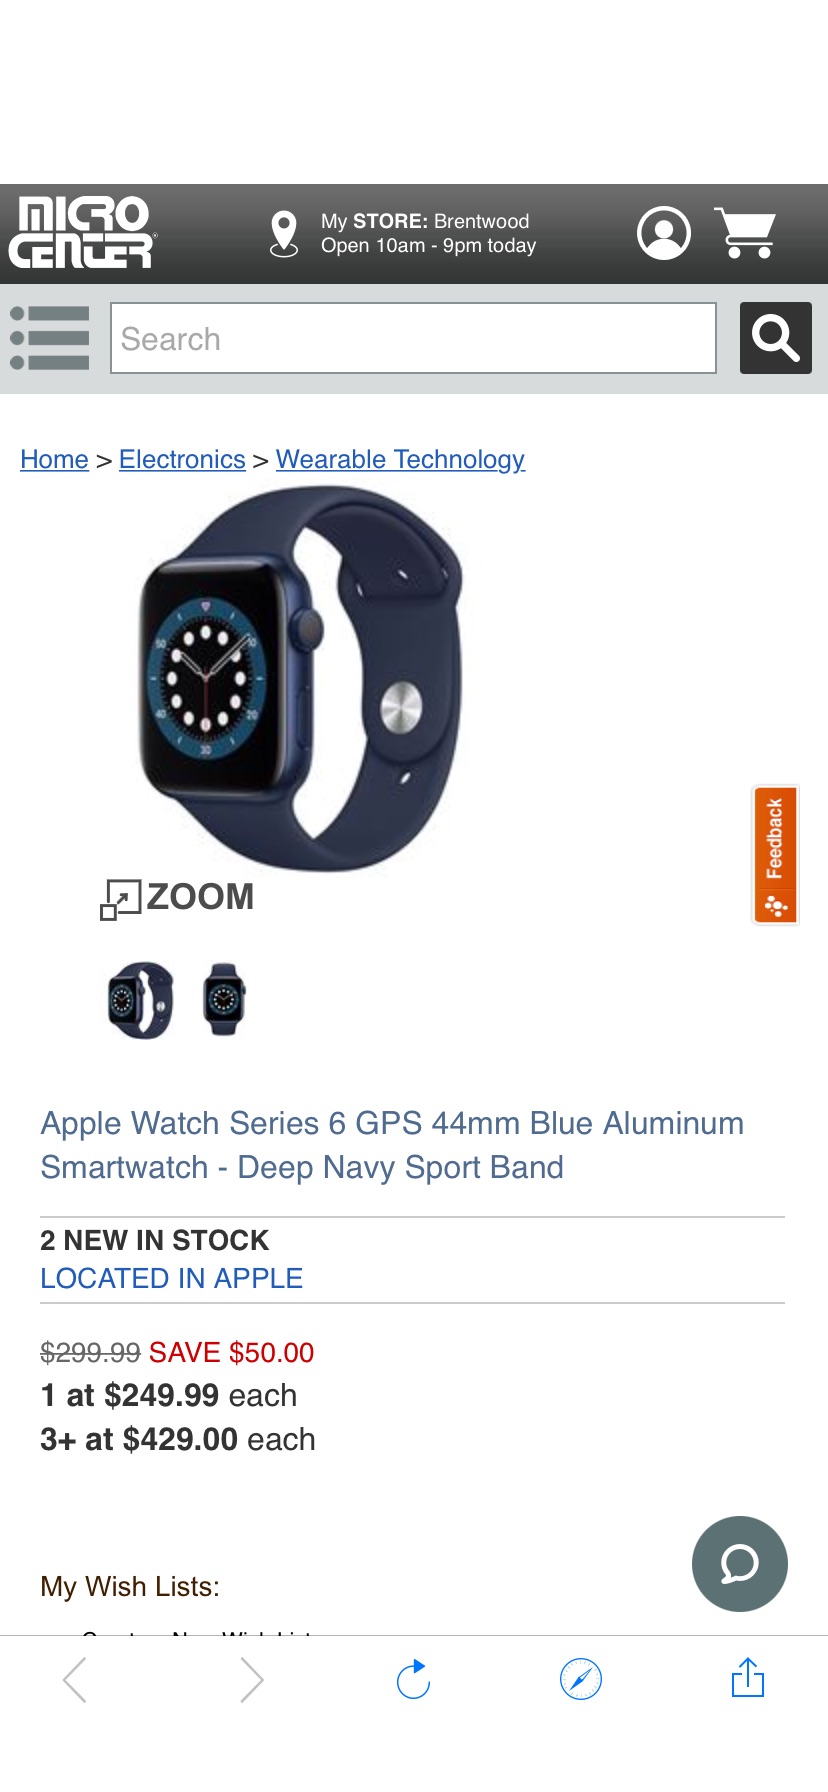 Apple Watch Series 6 六代 GPS 44mm Blue Aluminum Smartwatch - Deep Navy Sport Band - Micro Center